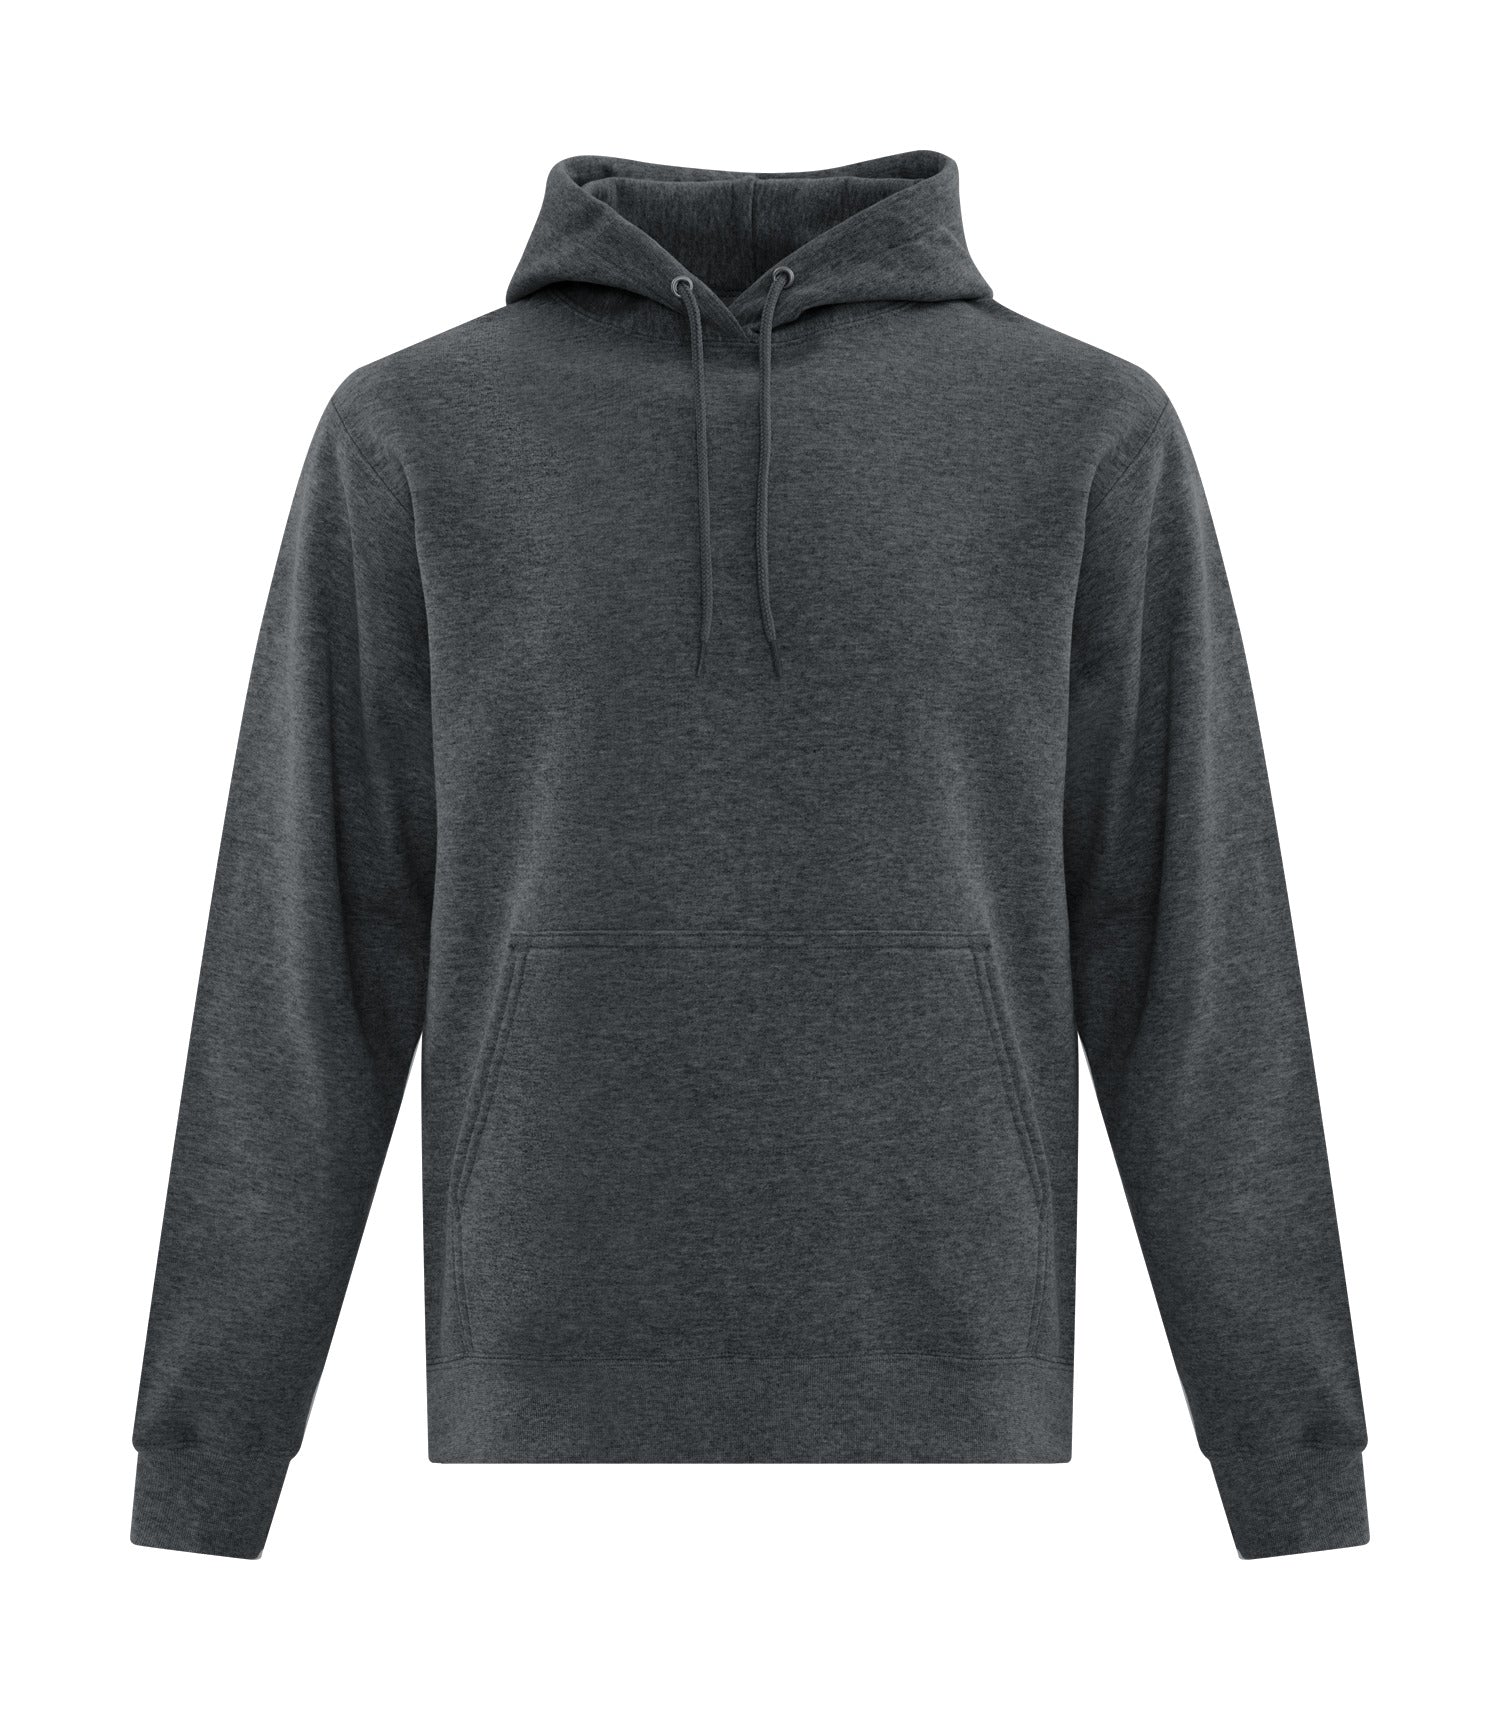 ATC Everyday Fleece Full Zip Hooded Youth Sweatshirt